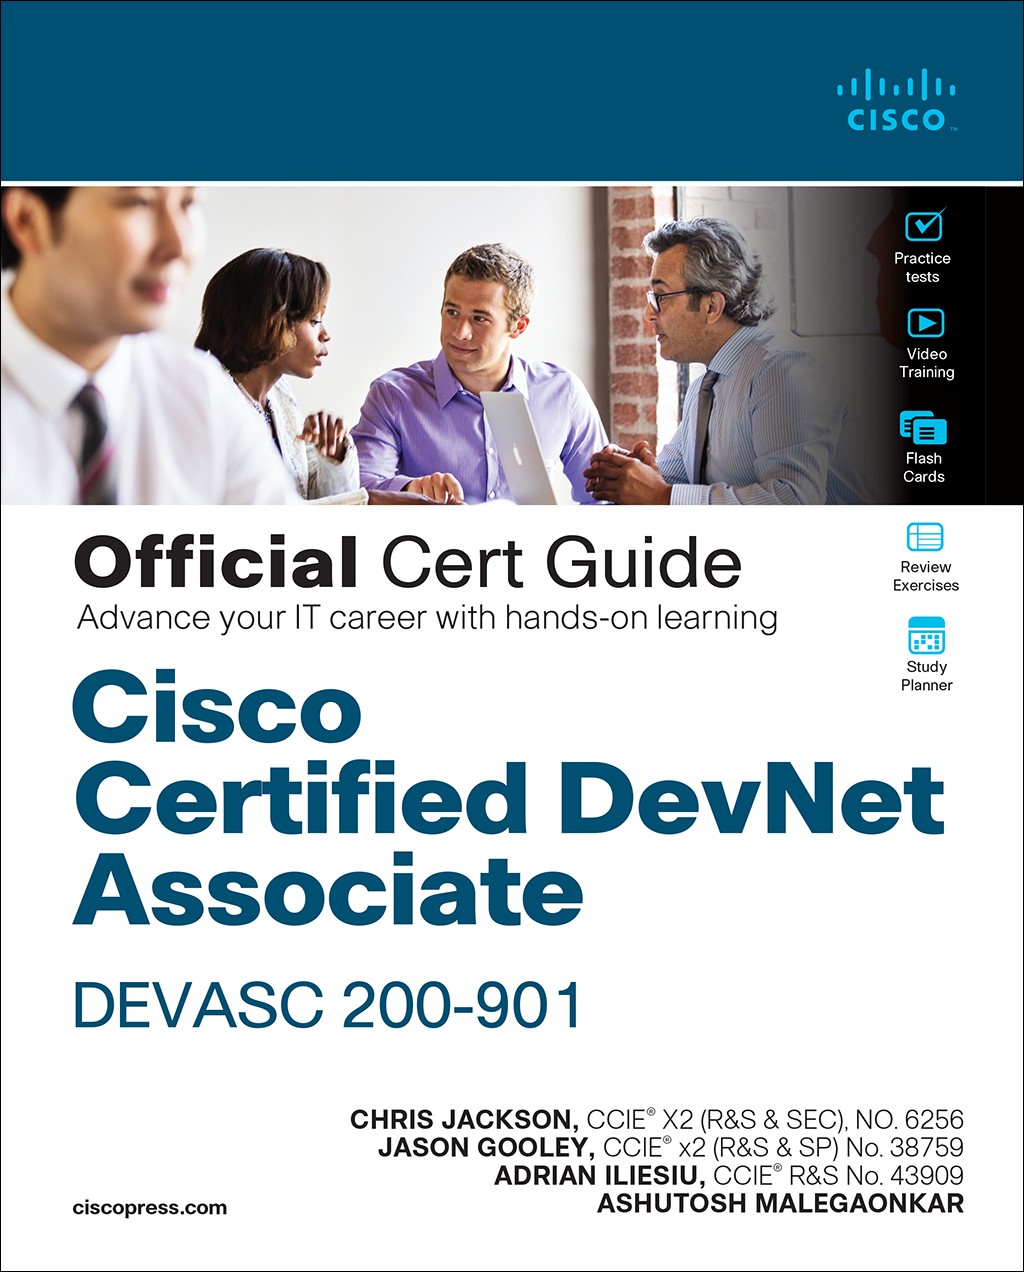 Cisco Certified DevNet Associate DEVASC 200-901 Official Cert Guide (Inclusive Access)